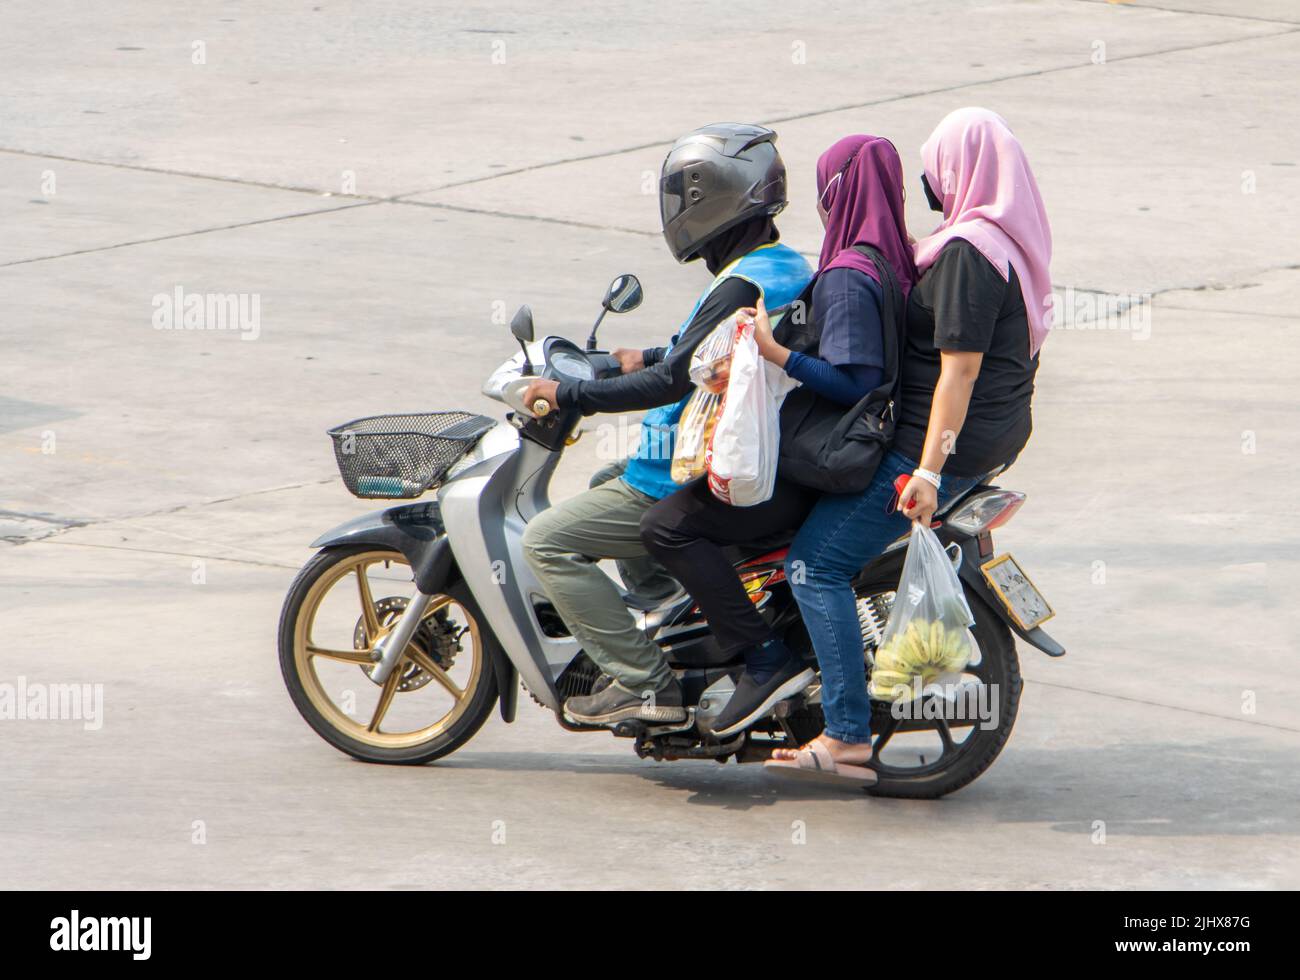 Ein Taxifahrer auf einem Motorrad fährt mit einer zwei Frau im Hijab. Stockfoto